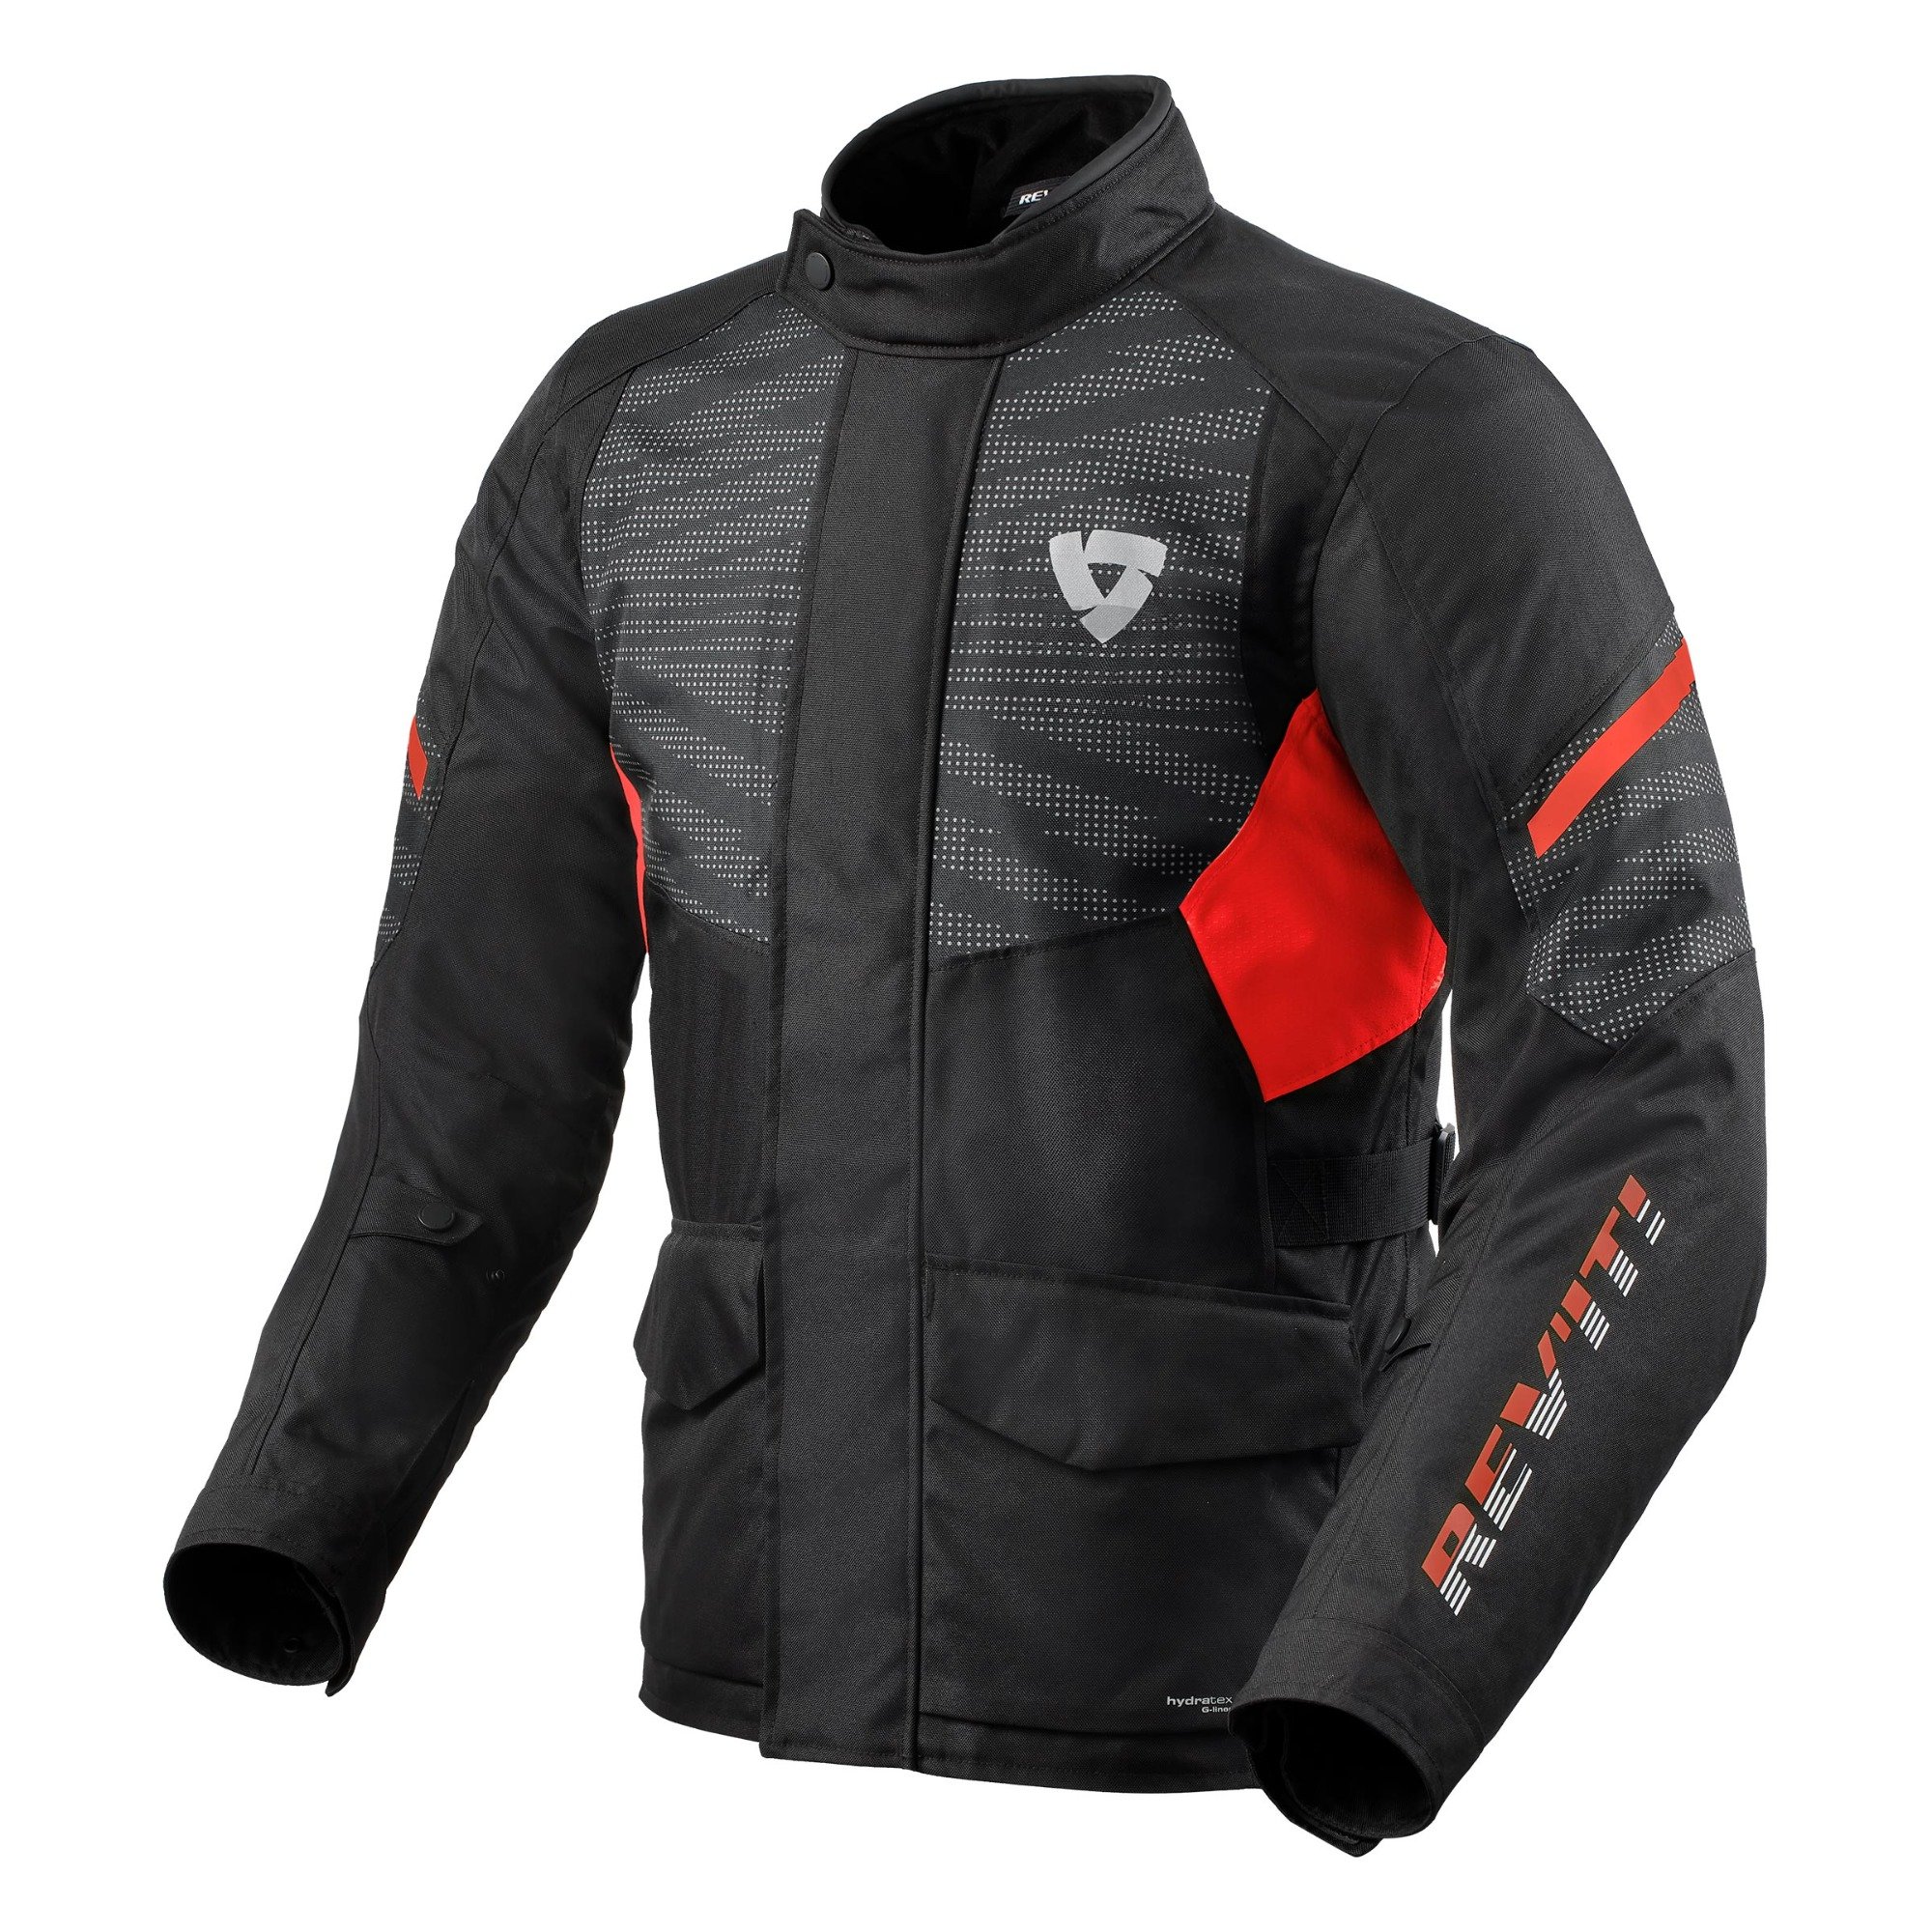 Image of REV'IT! Duke H2O Jacket Black Red Size M EN